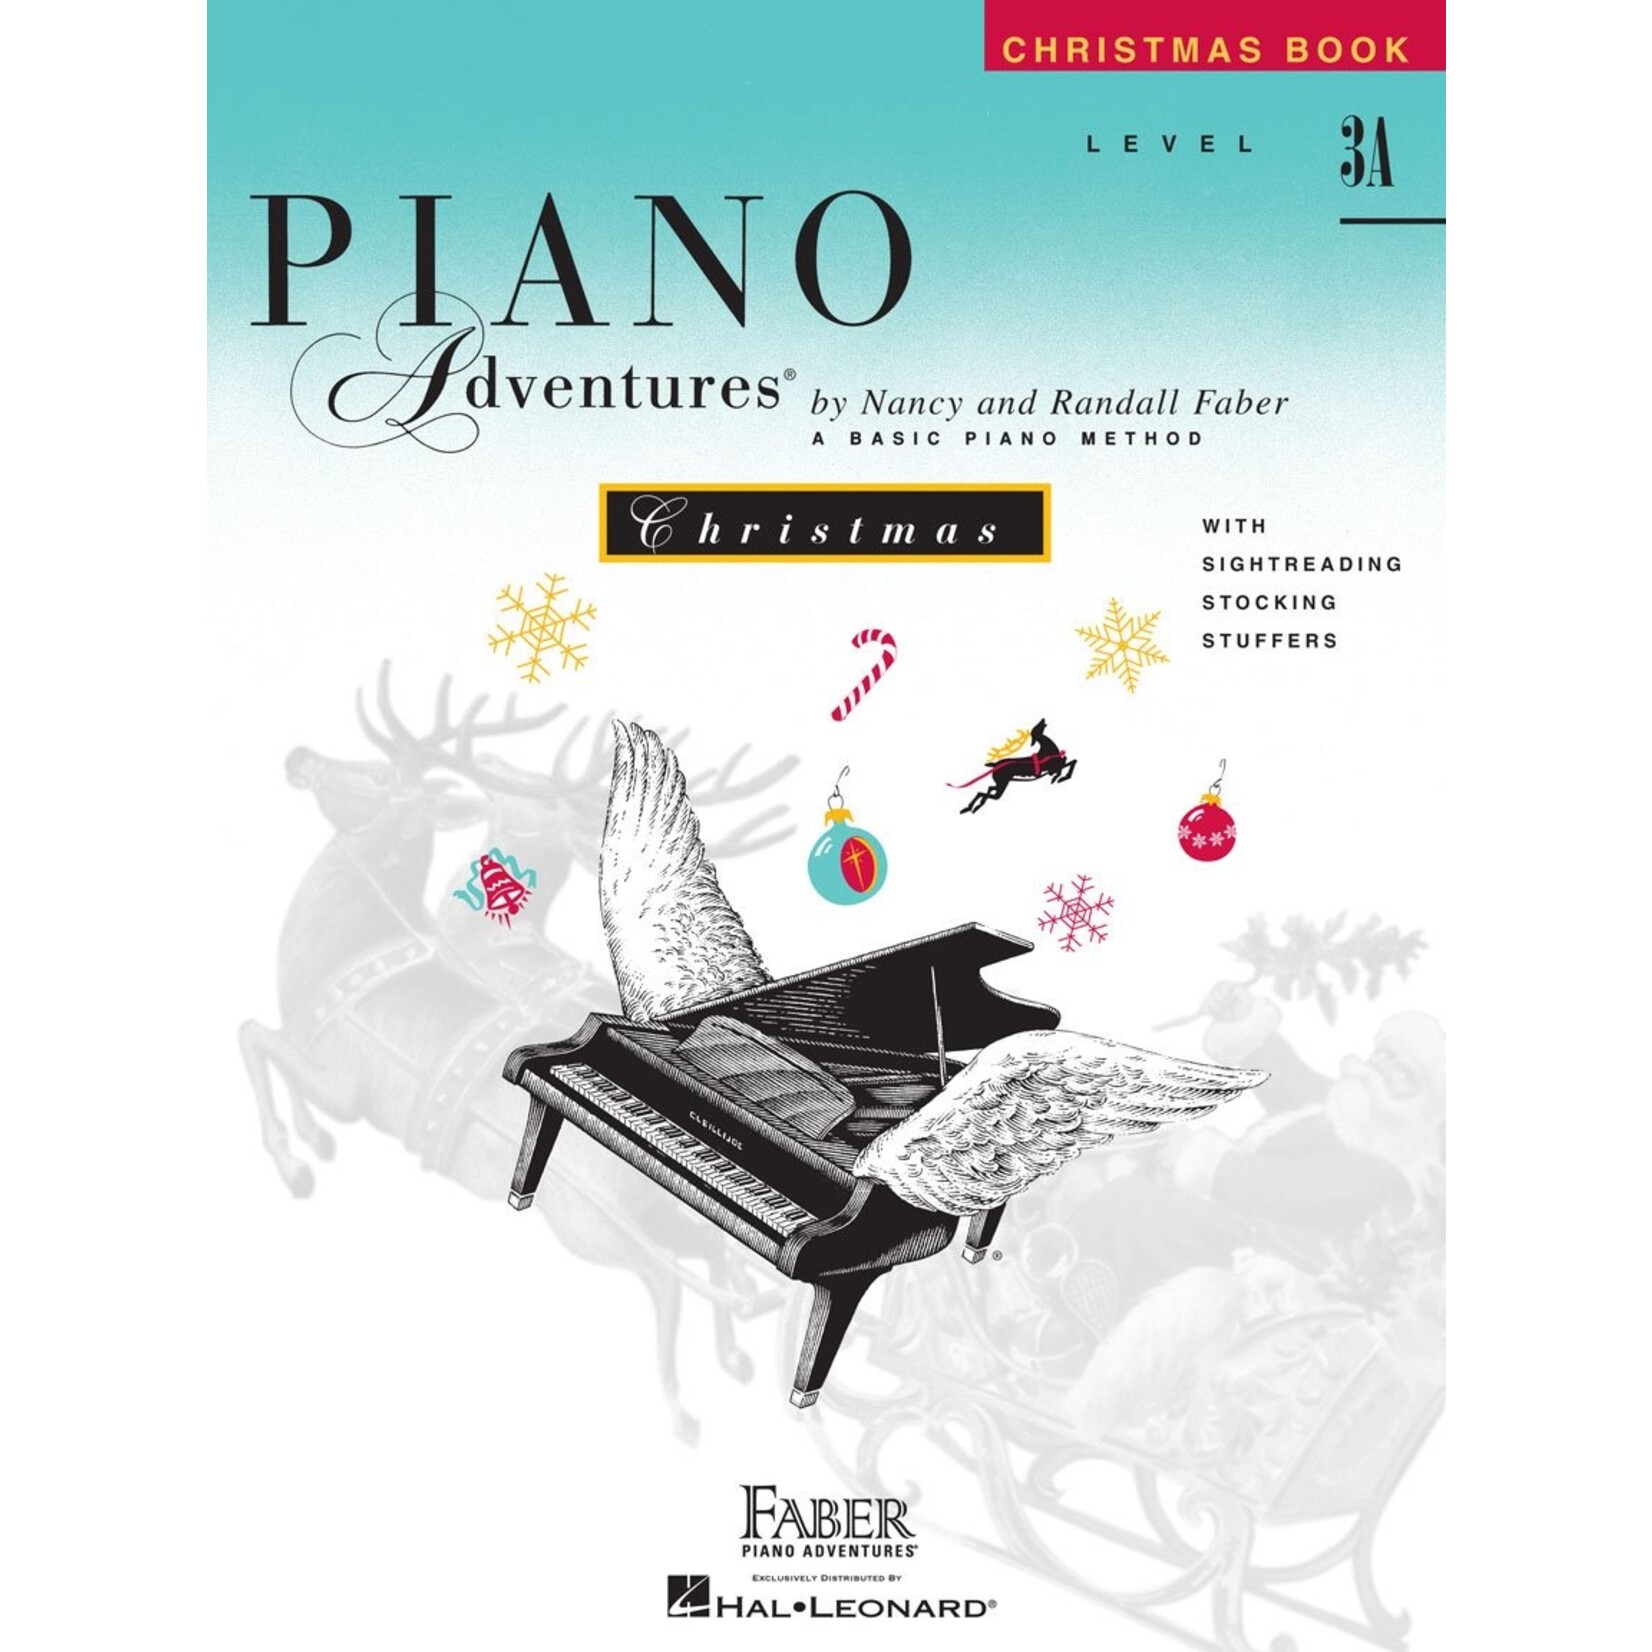 Faber Piano Adventures Level 3A Christmas